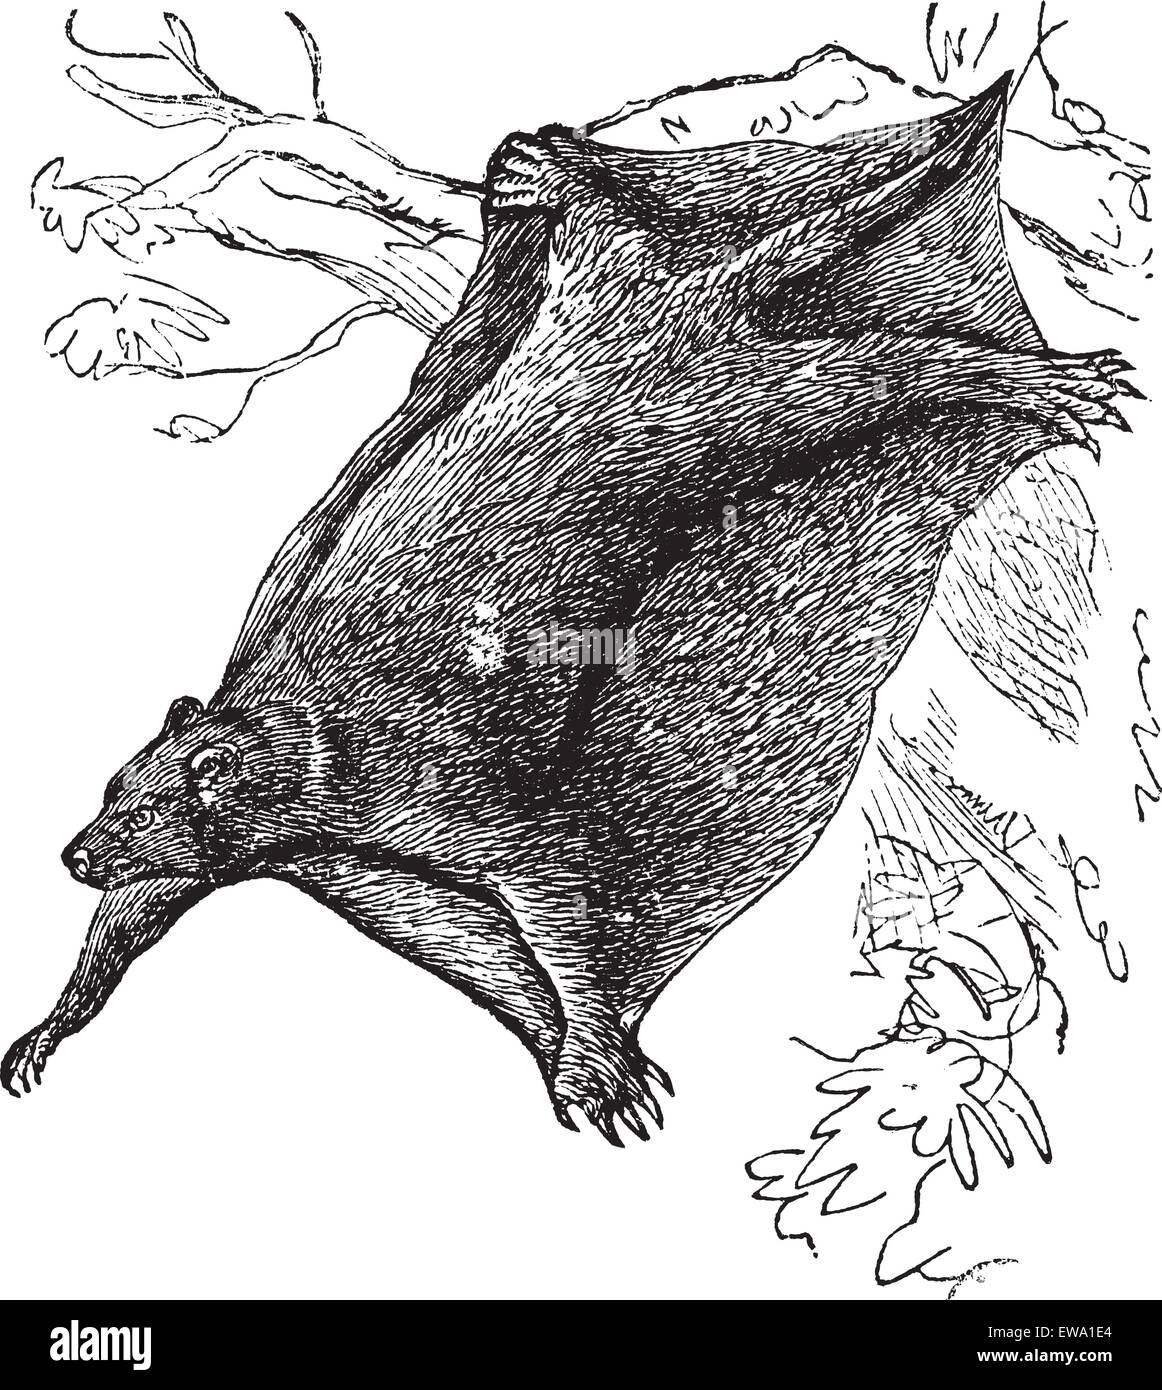 Cynocephalus volans conosciuto anche come galeopitheque, vintage illustrazioni incise di Cynocephalus volans. Illustrazione Vettoriale